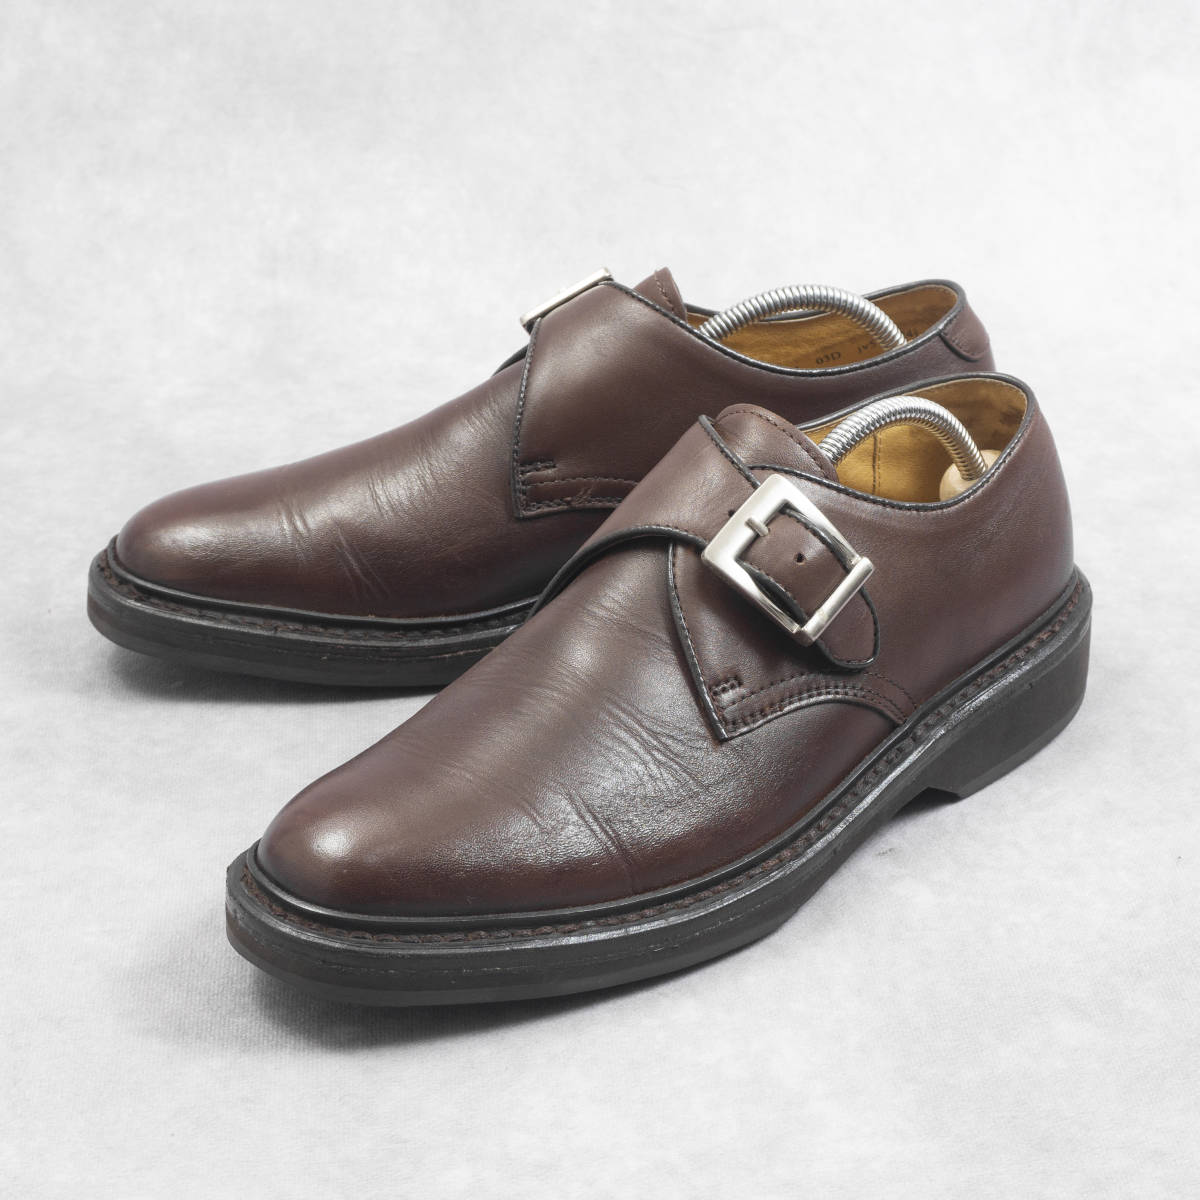 良品『REGAL』モンクストラップシューズ 24.5cm ブラウン プレーントゥ 革靴 ビジネス リーガル メンズ 管理1140_画像1